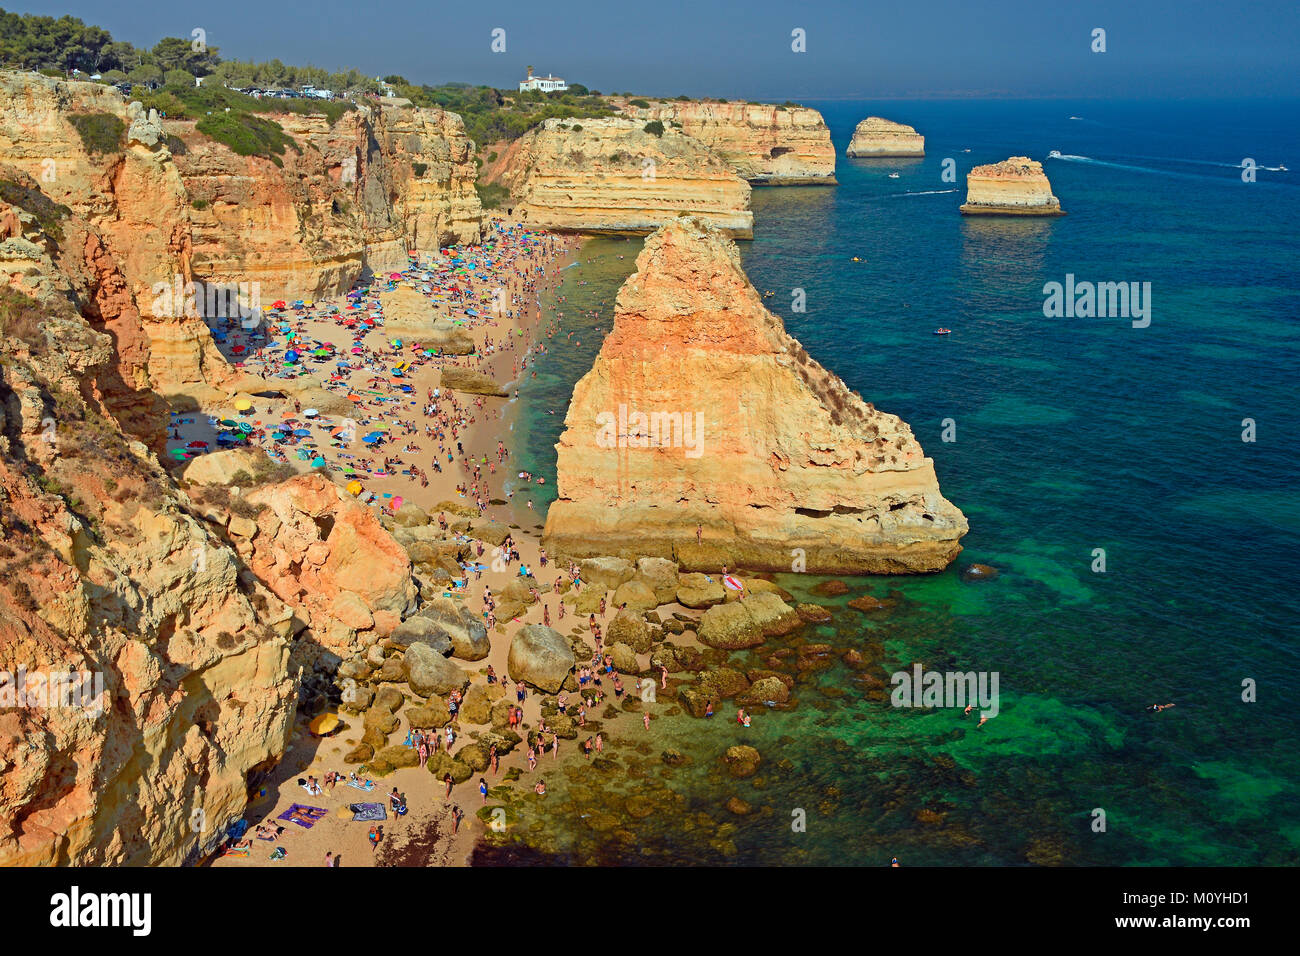 Molti bagnanti in spiaggia,Praia da Marinha,costa sud,Algarve, PORTOGALLO Foto Stock